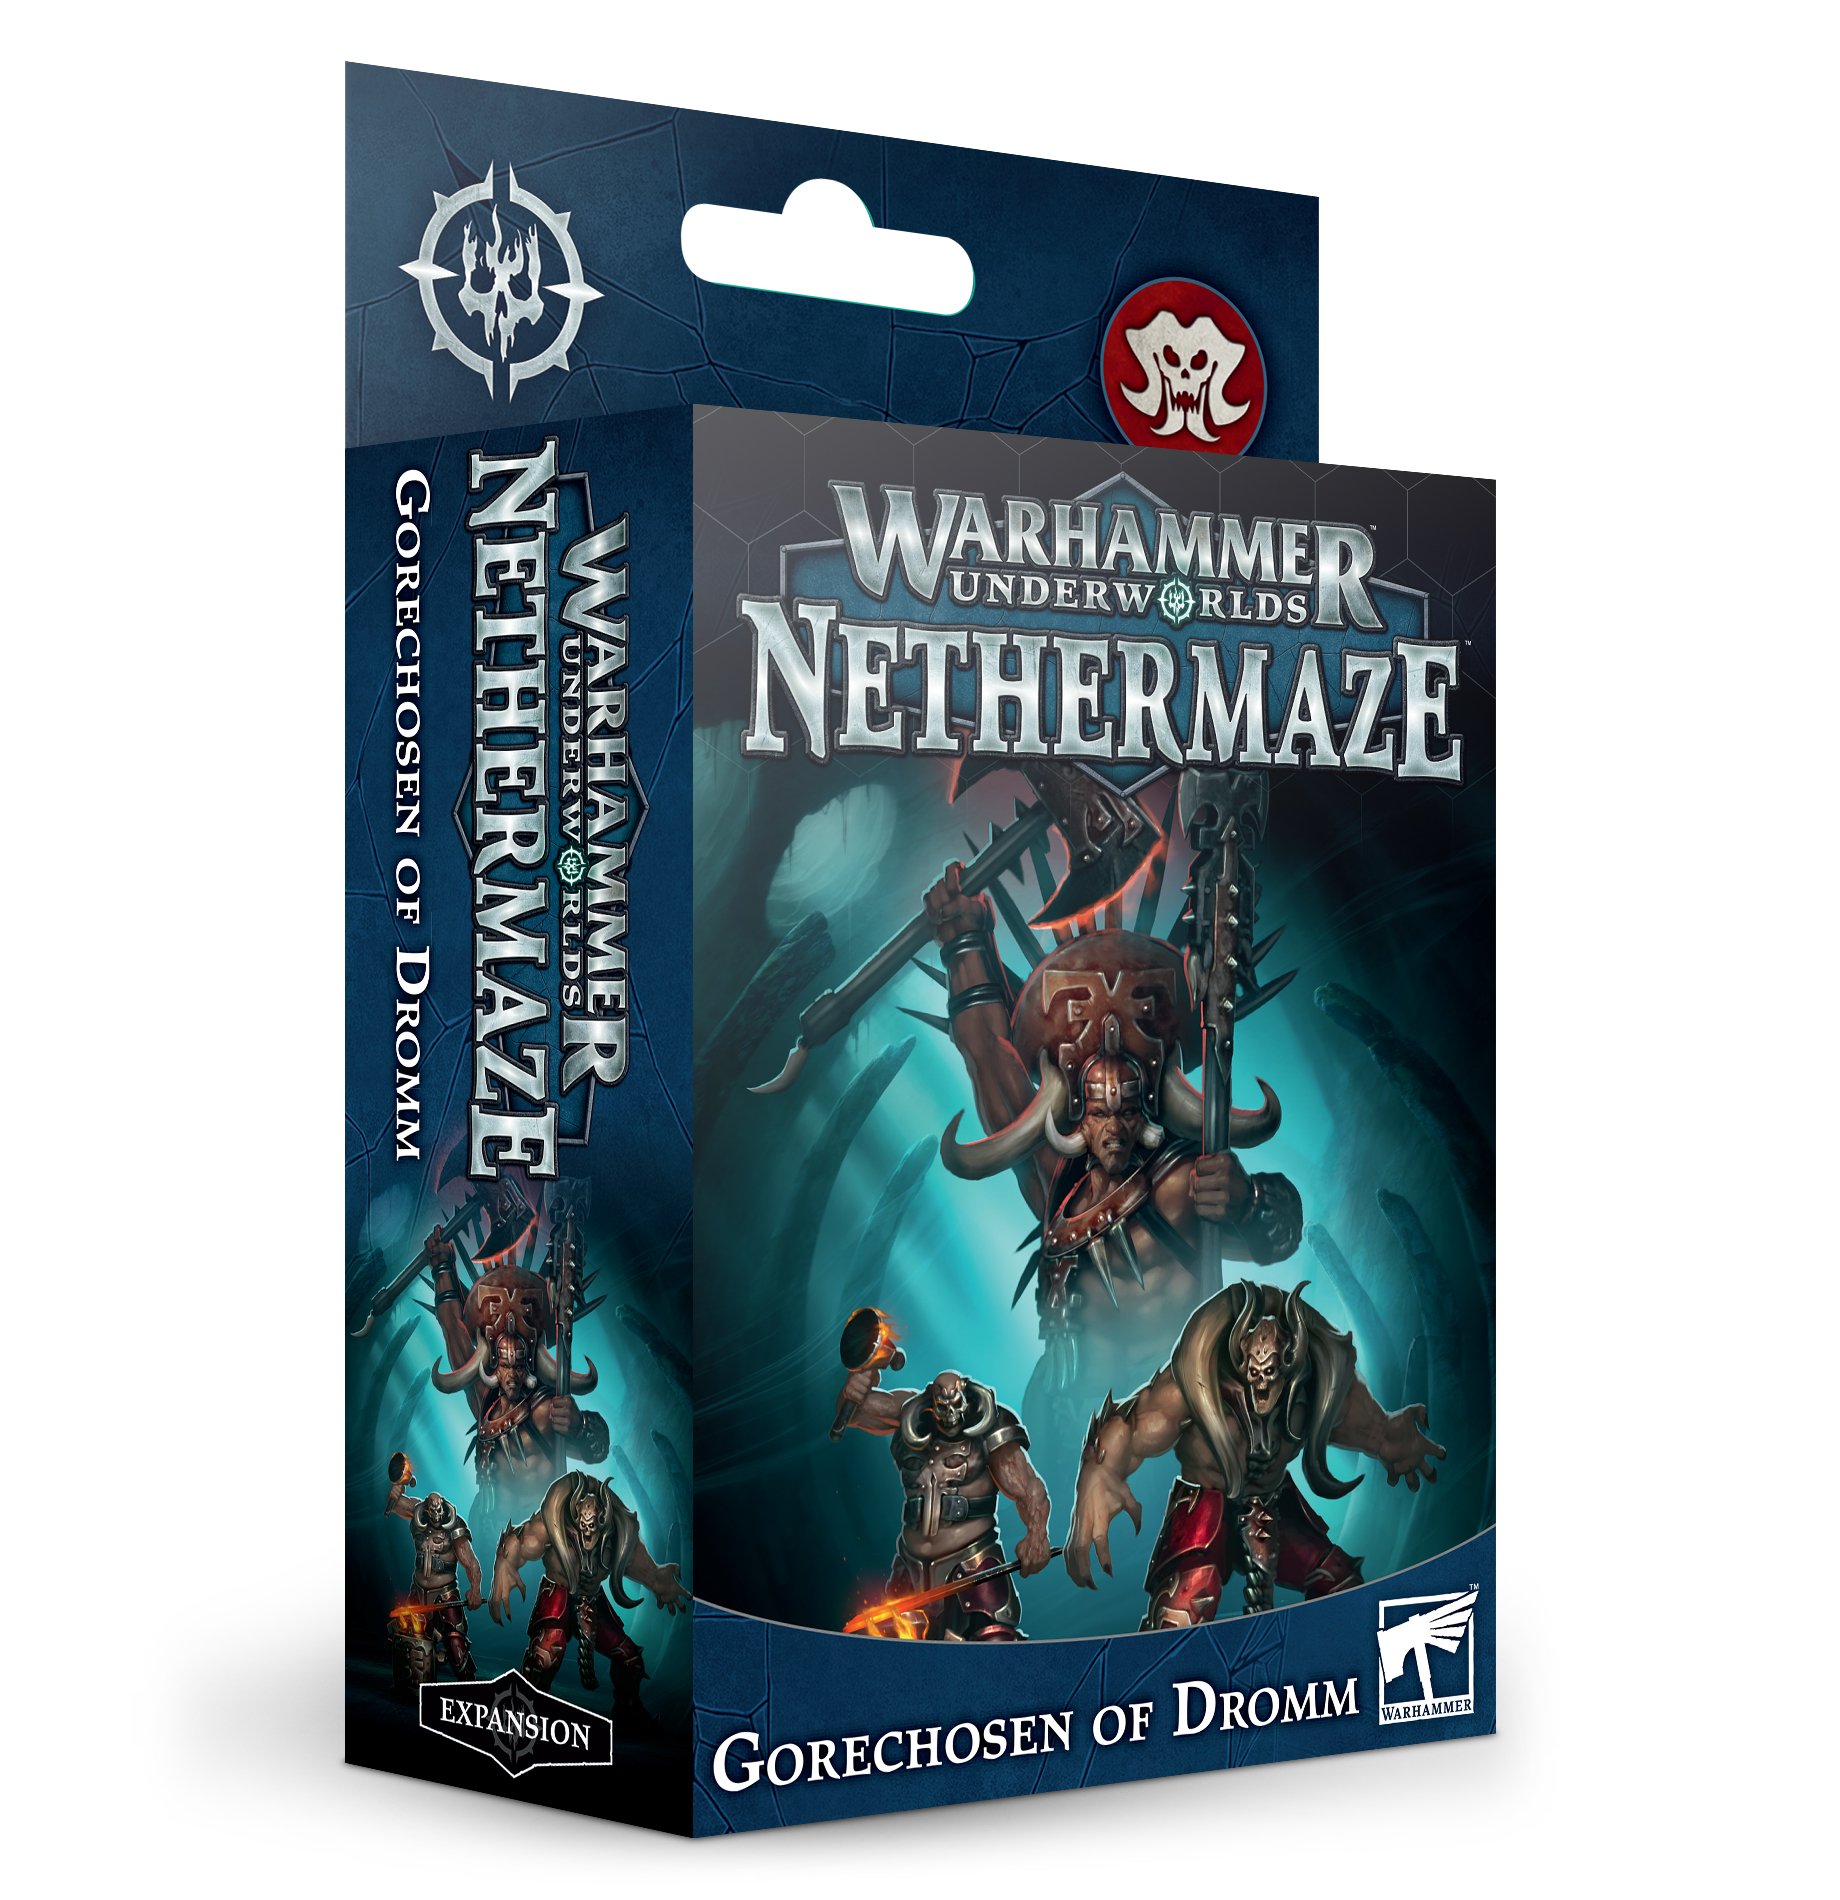 Warhammer Underworlds: Nethermaze – Gorechosen of Dromm (ENG)